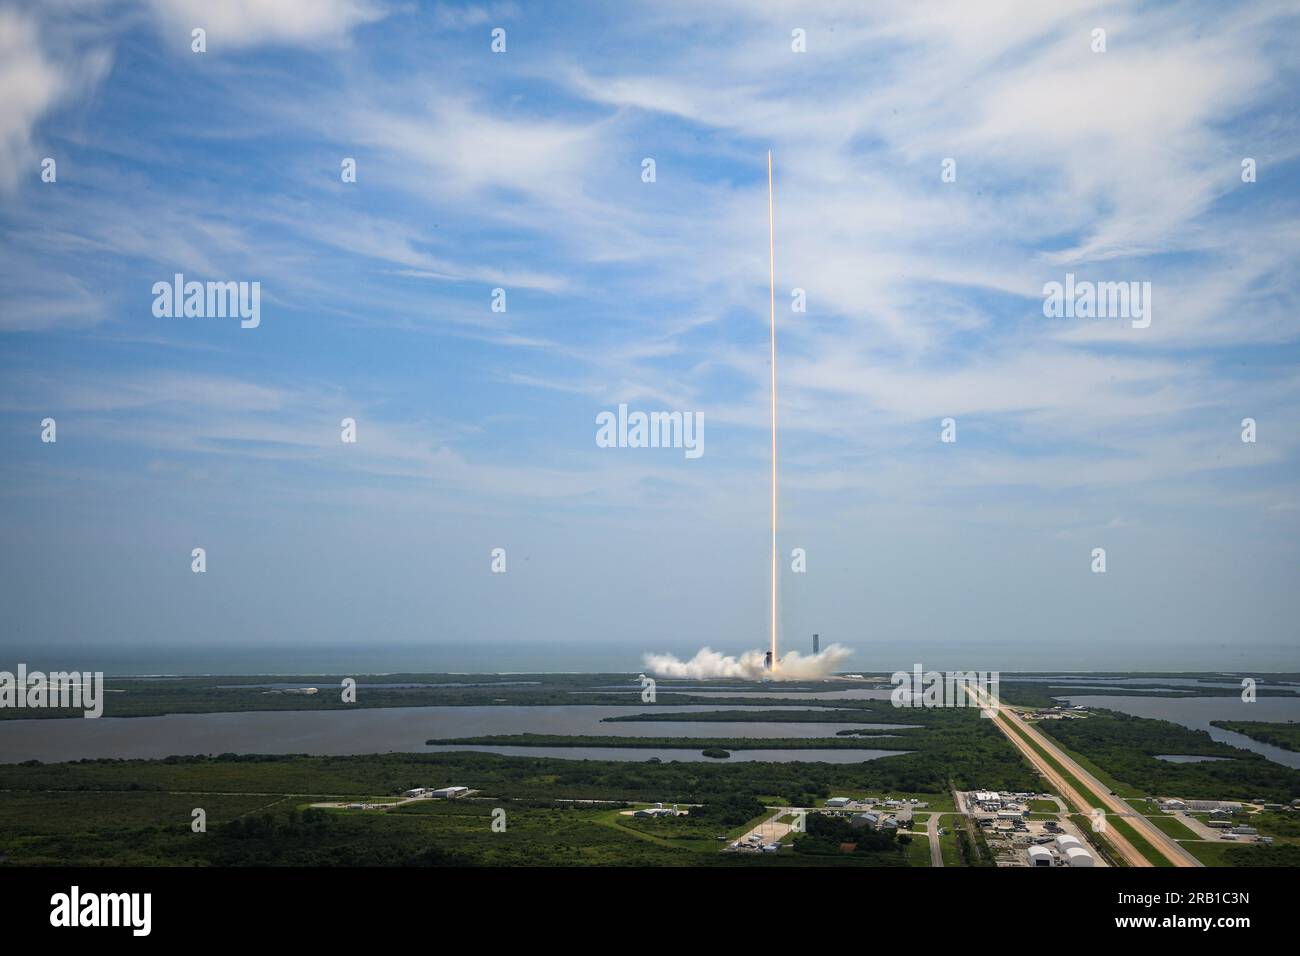 5 juin 2023 - KSC, Floride, USA - la NASA et SpaceX ont lancé la 28e mission commerciale de réapprovisionnement du Cargo Dragon à partir du Launch Complex 39a au Kennedy Space Center de l'agence en Floride. Le décollage a eu lieu à 11:47 heures du matin HAE, 5 juin 2023. Dragon de SpaceX livrera de nouvelles recherches scientifiques, de la nourriture, des fournitures et de l'équipement à la Station spatiale internationale pour l'équipage, y compris la prochaine paire d'IROSA (International Space Station Roll Out Solar Arrays). Ces panneaux solaires, qui se déploient en utilisant l'énergie cinétique stockée, élargiront les capacités de production d'énergie de la station spatiale. Ceci Banque D'Images